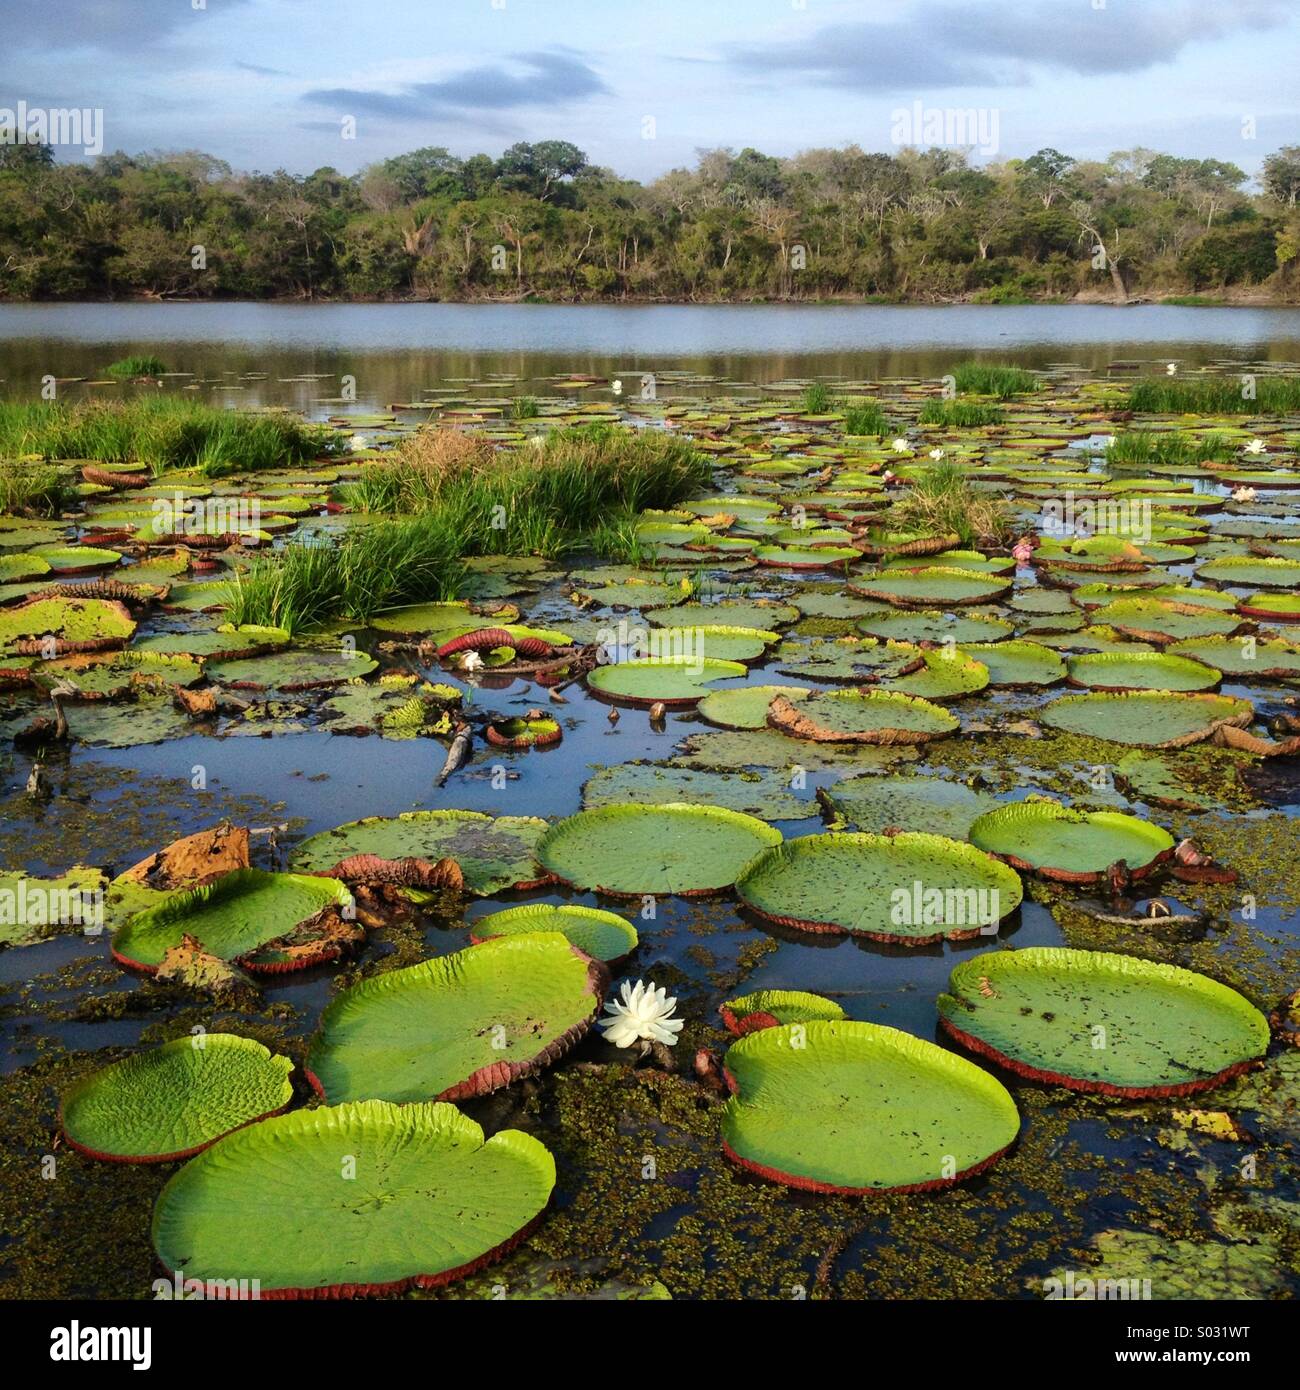 Amazon nenúfares, Oxbow Lake, Río Rupununi, Guyana, América del Sur, Foto de stock